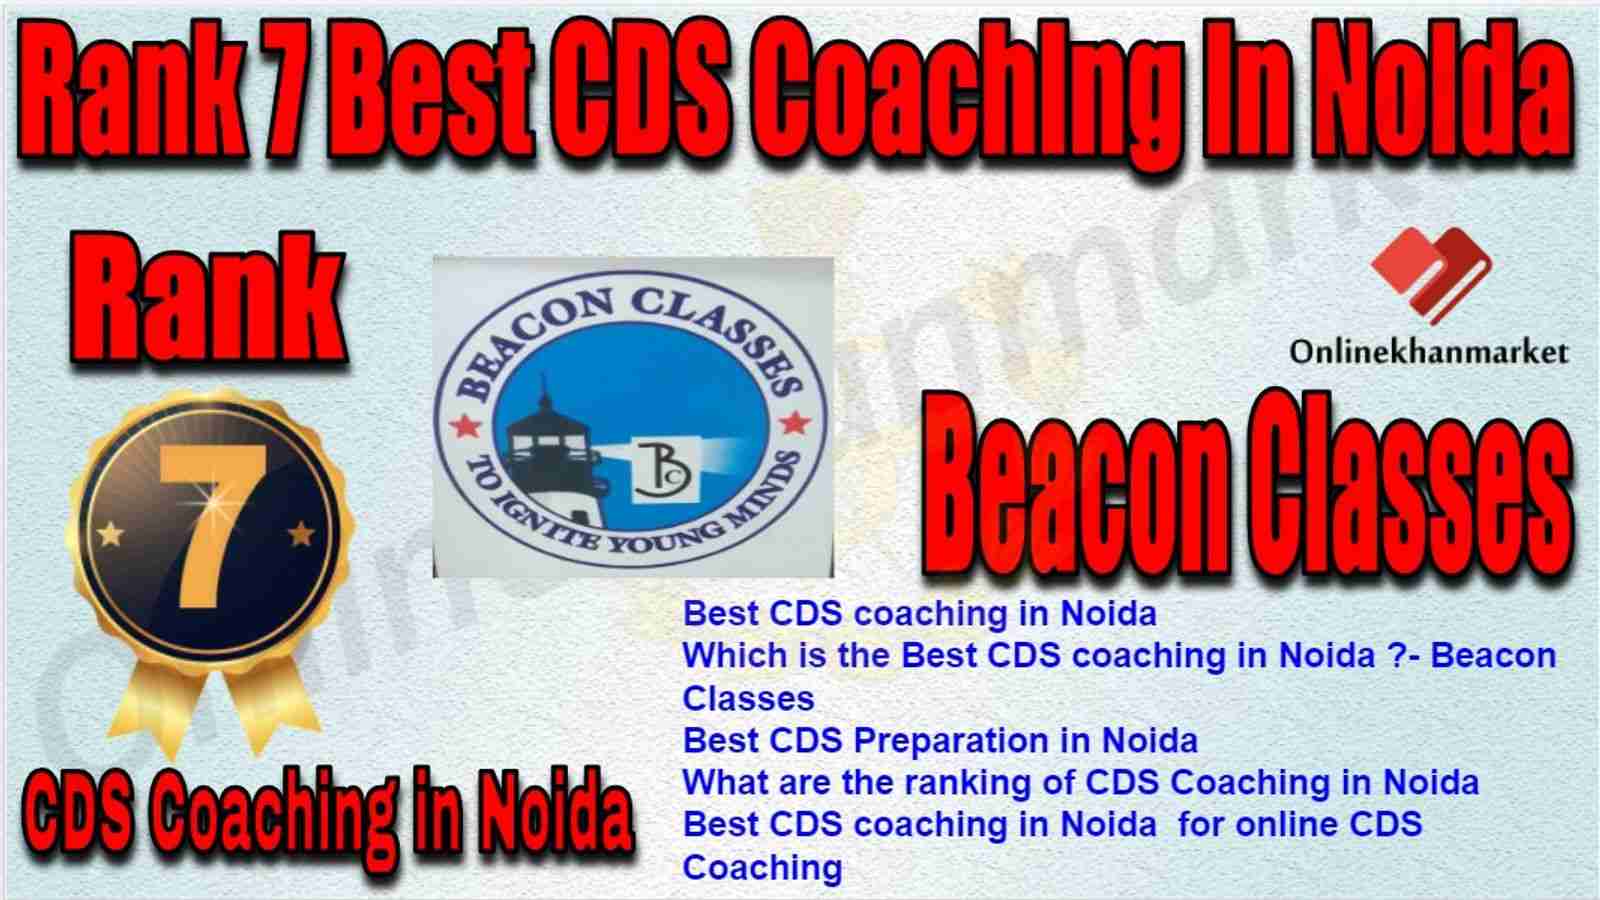 Rank 7 Best CDS Coaching in Noida